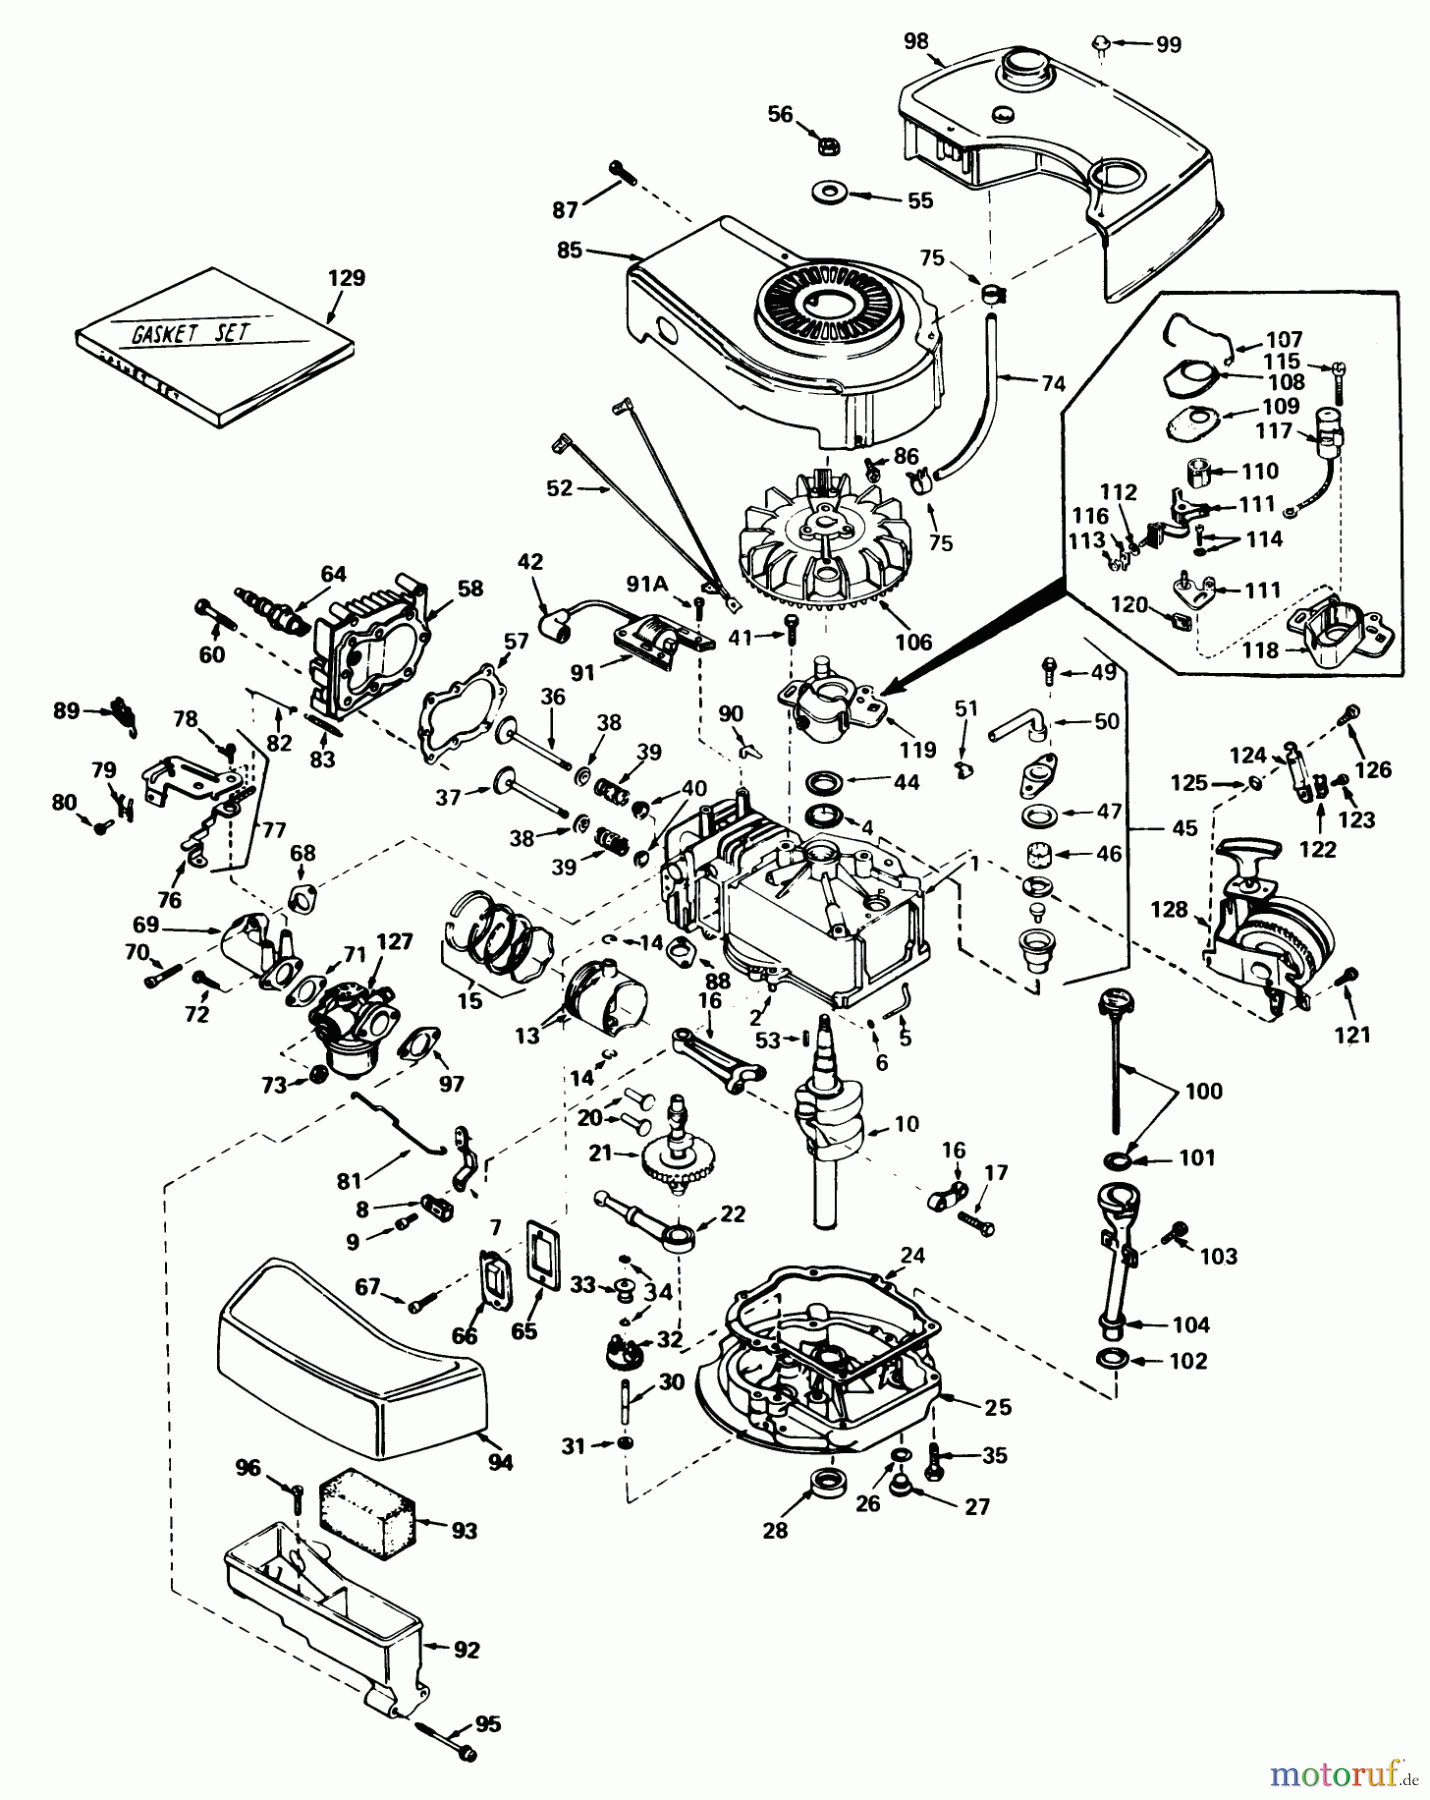  Toro Neu Mowers, Walk-Behind Seite 1 20610 - Toro Lawnmower, 1980 (0000001-0999999) ENGINE TECUMSEH MODEL NO. TNT 100-10063C